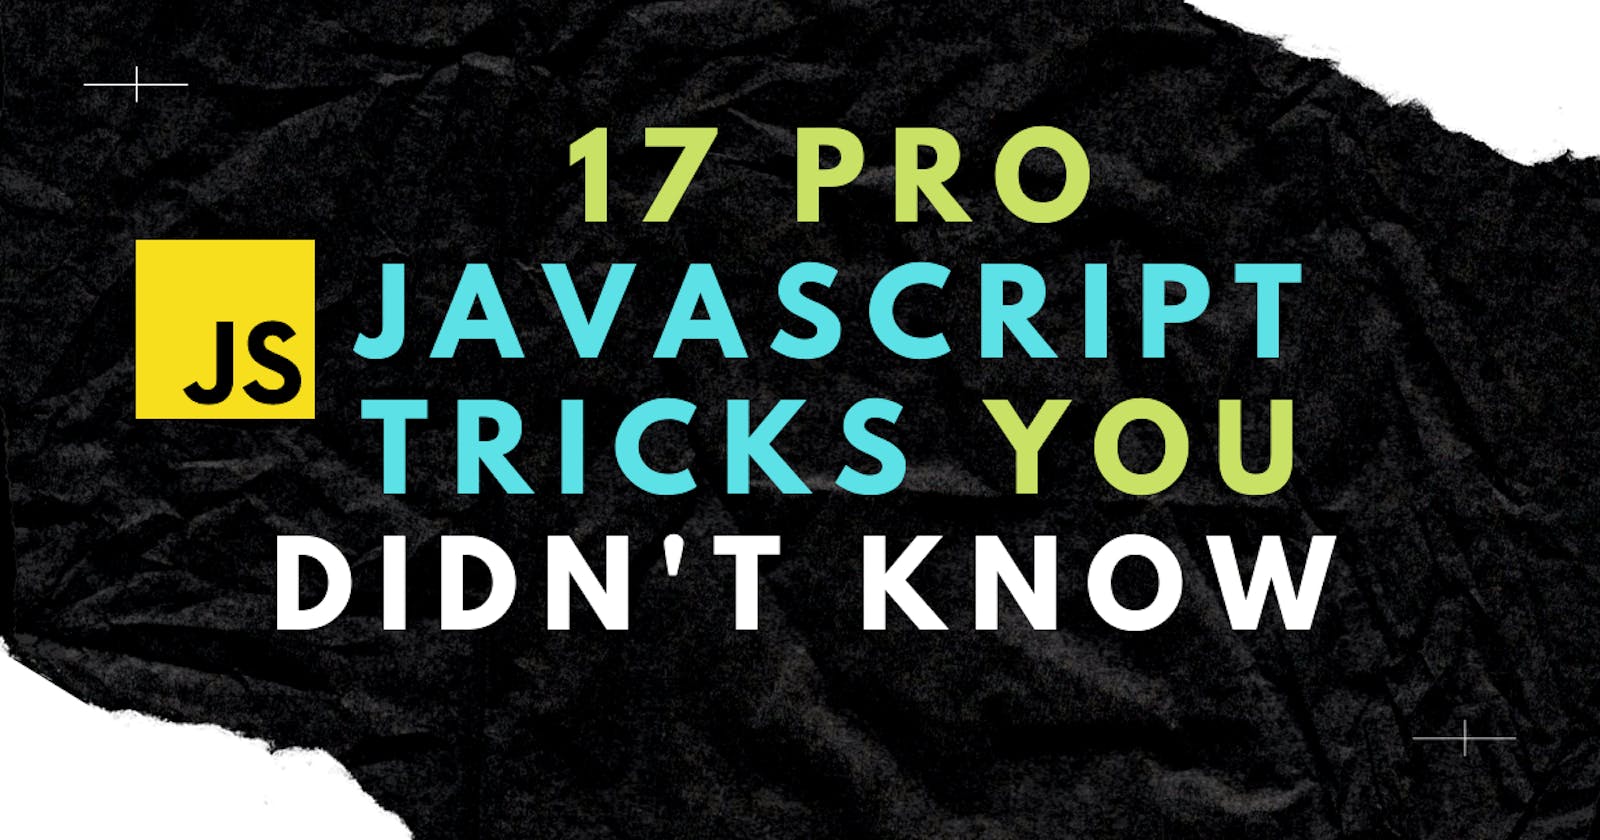 17 Pro JavaScript tricks you didn't know